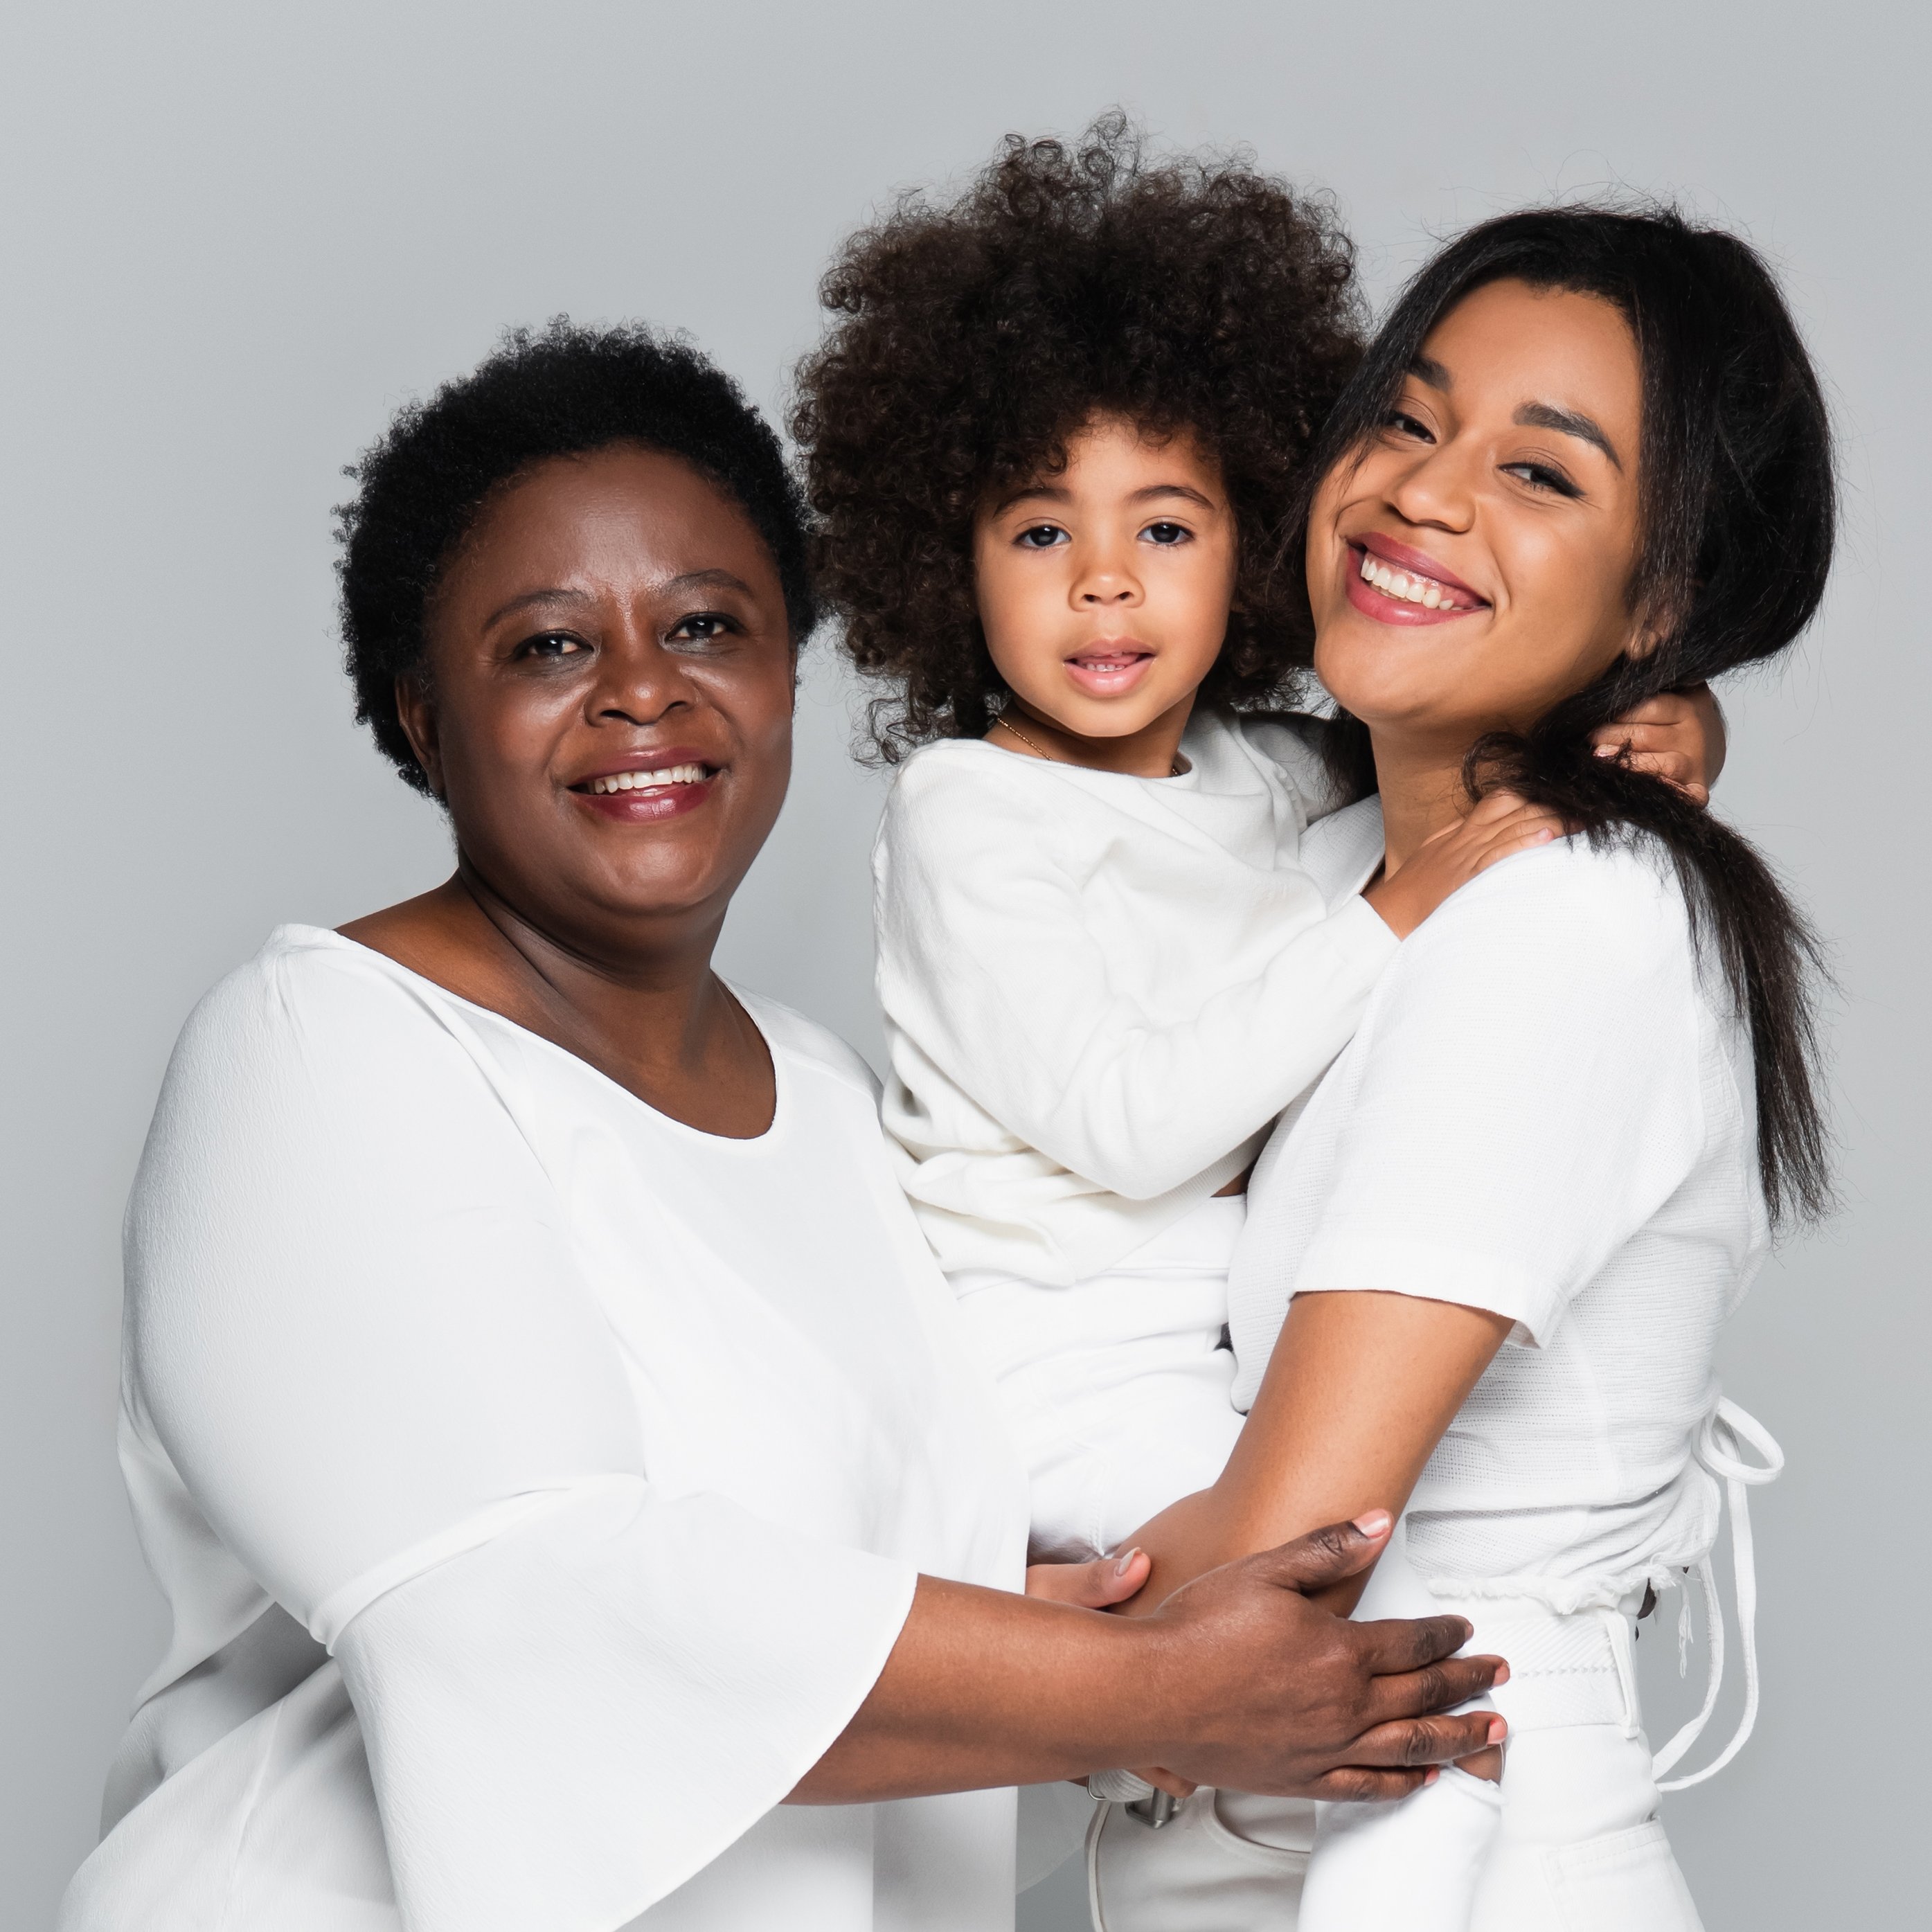 Junge afrikanische-amerikanische Frau mit Mutter und Tochter, lächelnd und sich gegenseitig umarmend ©LightField Studios/Shutterstock.com 